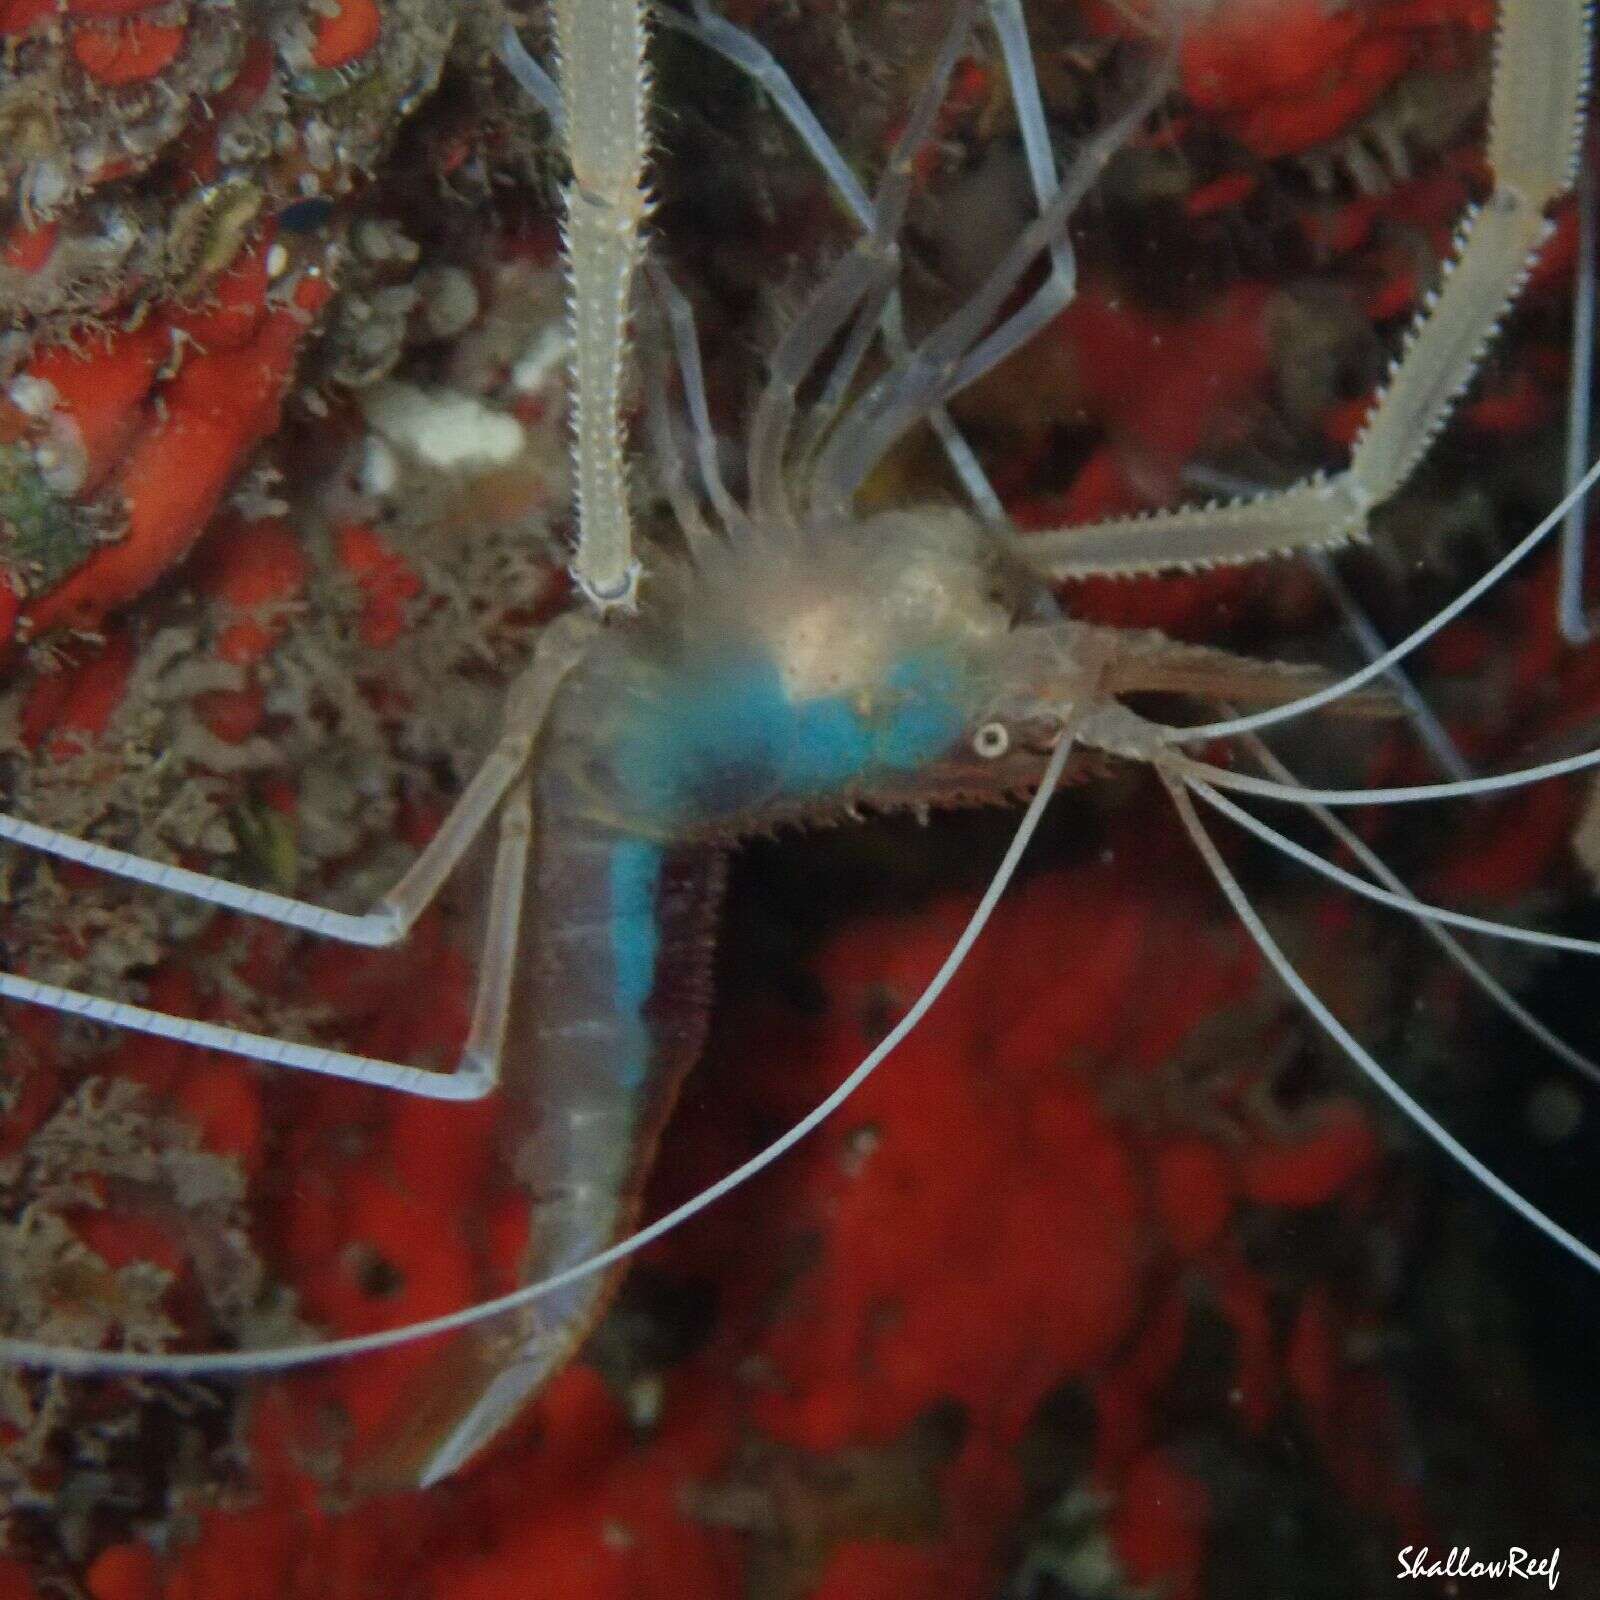 Image of flameback coral shrimp